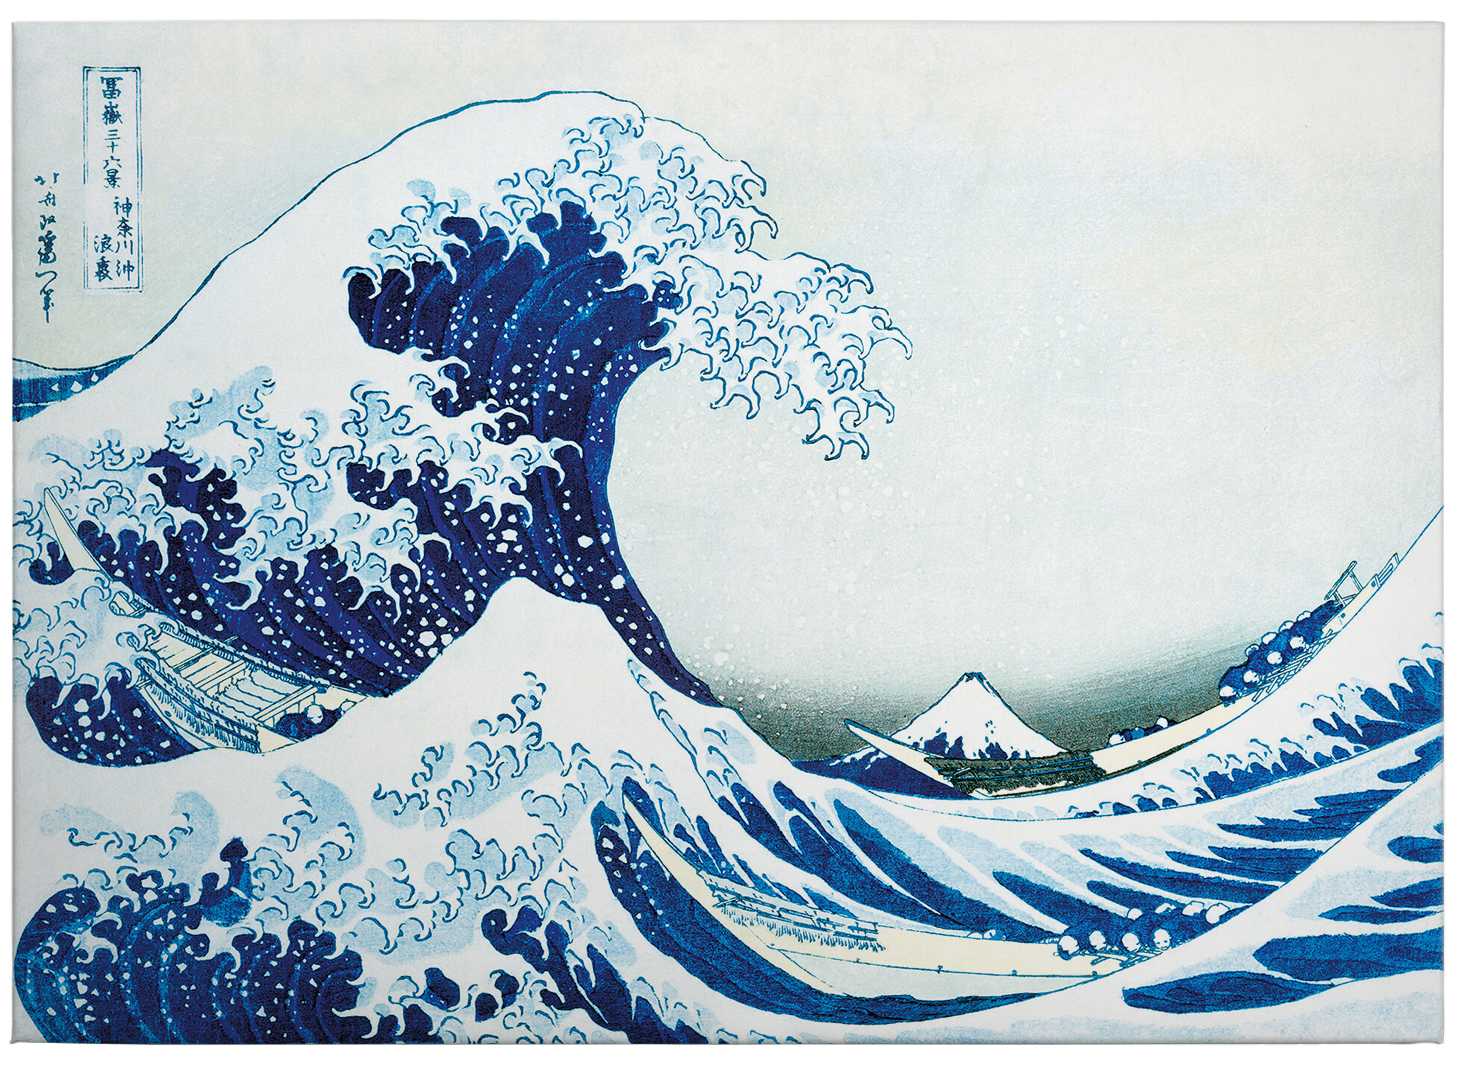             Toile "La grande vague près de Kanagawa" de Hokusai - 0,70 m x 0,50 m
        